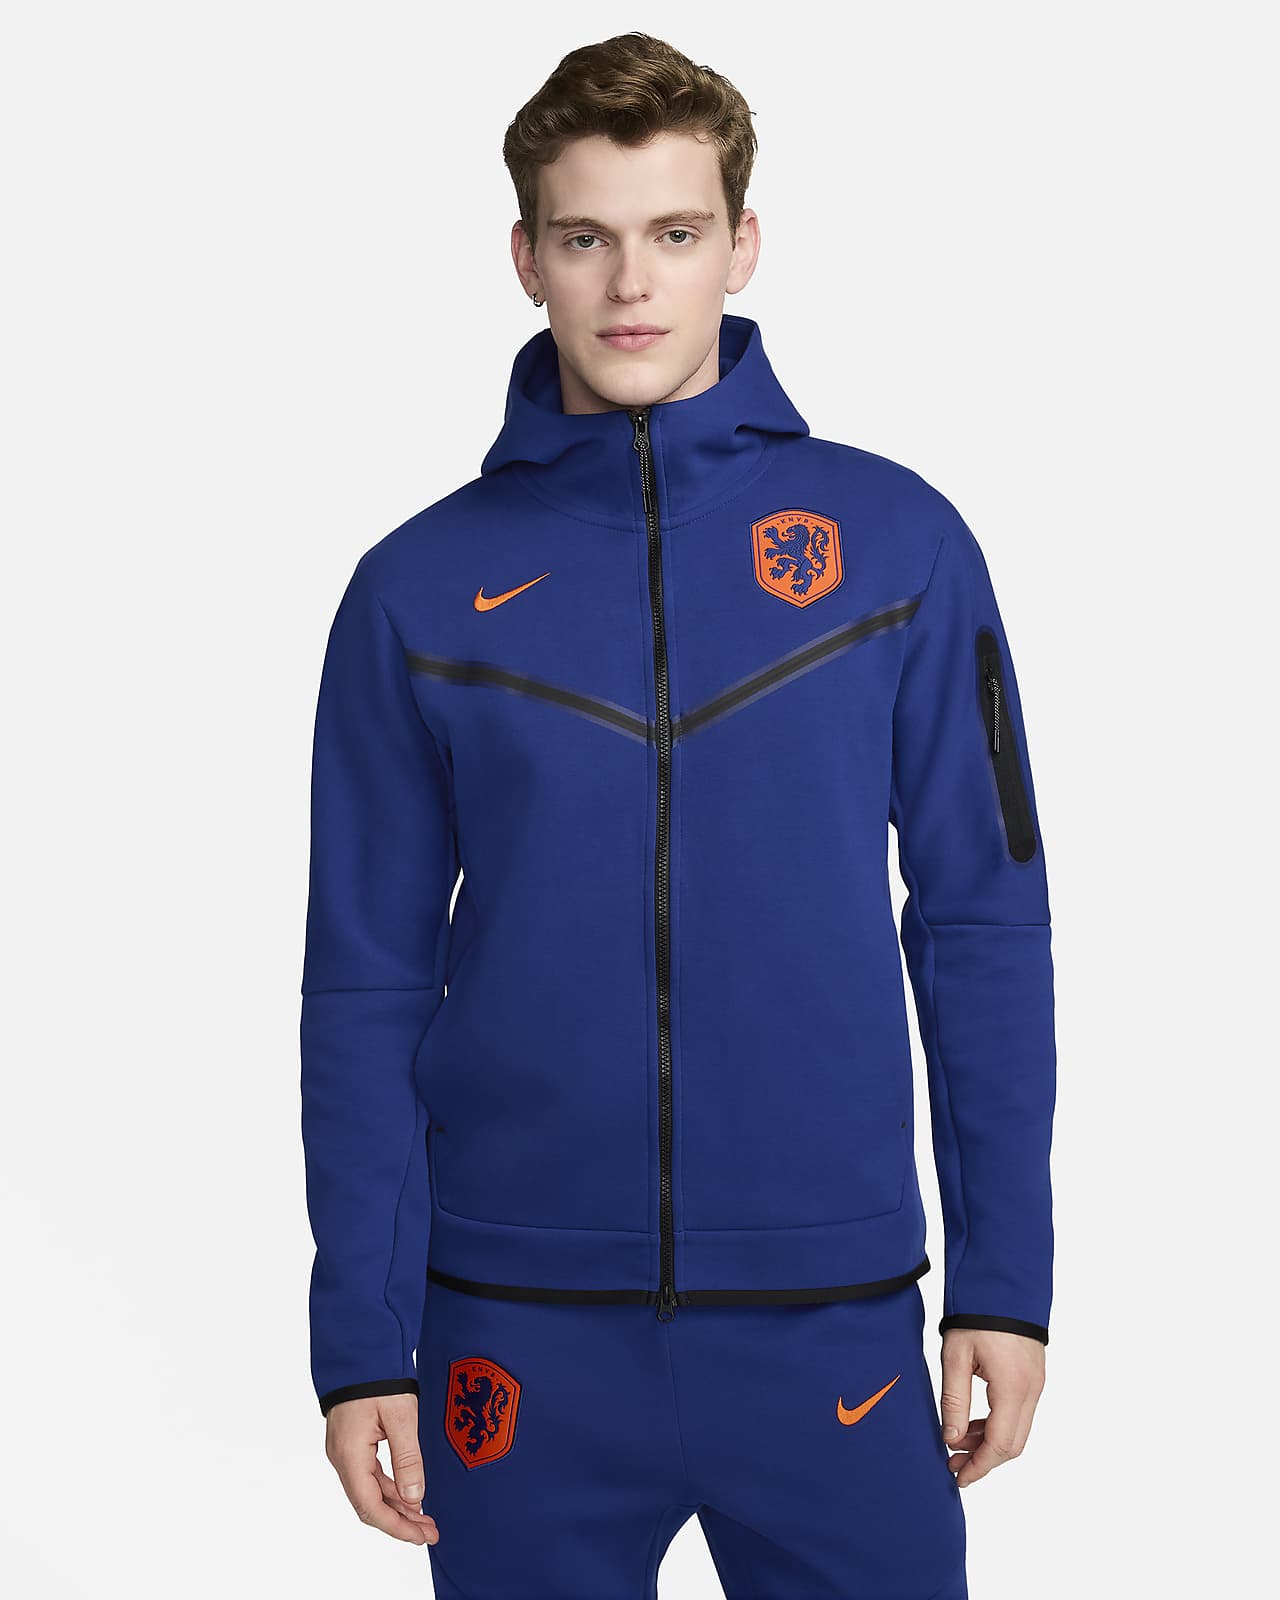 Ανδρική ποδοσφαιρική μπλούζα με κουκούλα και φερμουάρ σε όλο το μήκος Nike Κάτω Χώρες Tech Fleece Windrunner